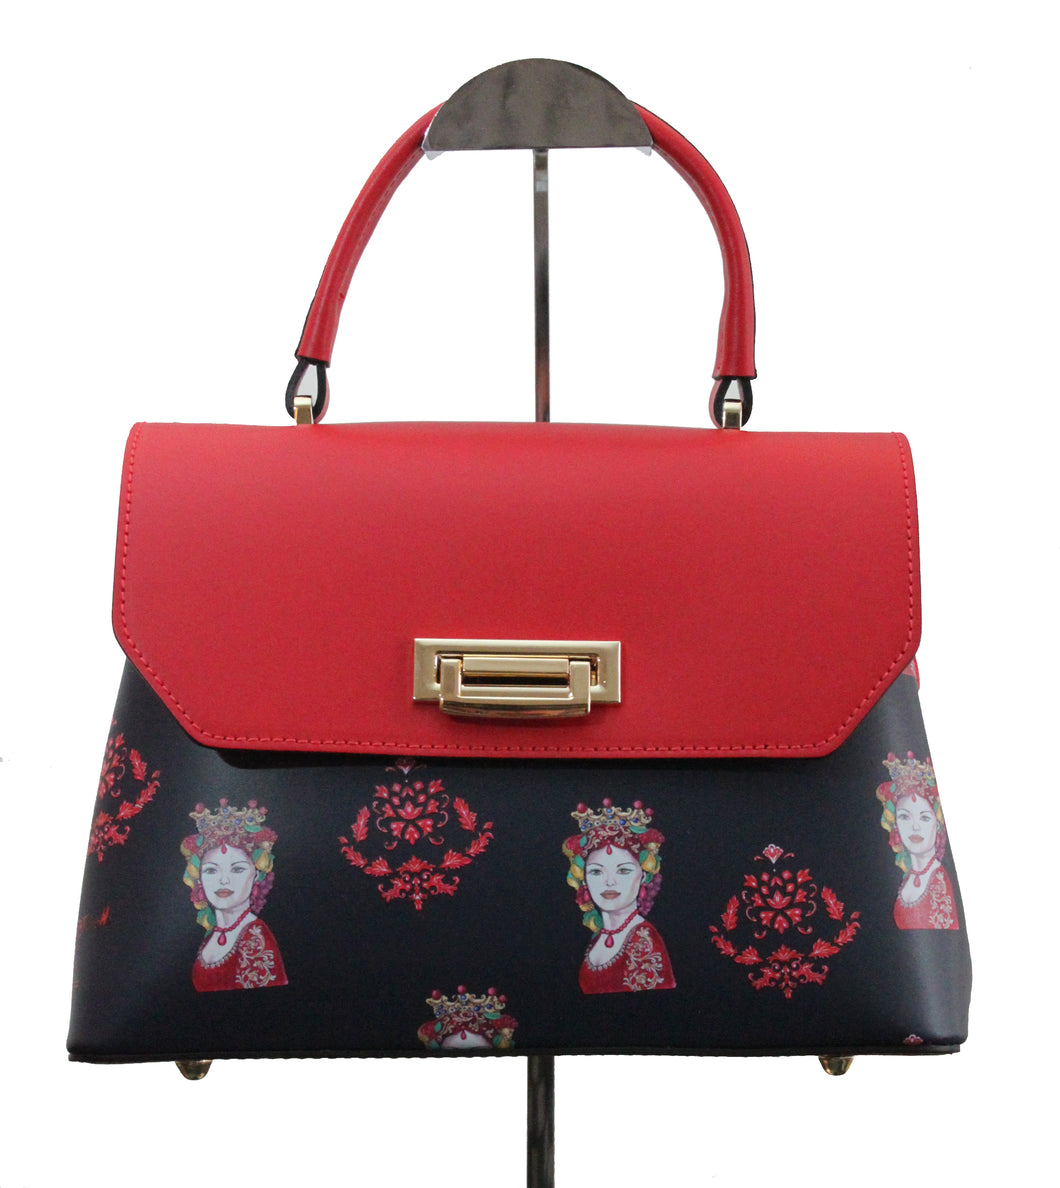 Marika model clutch bag - Red queen